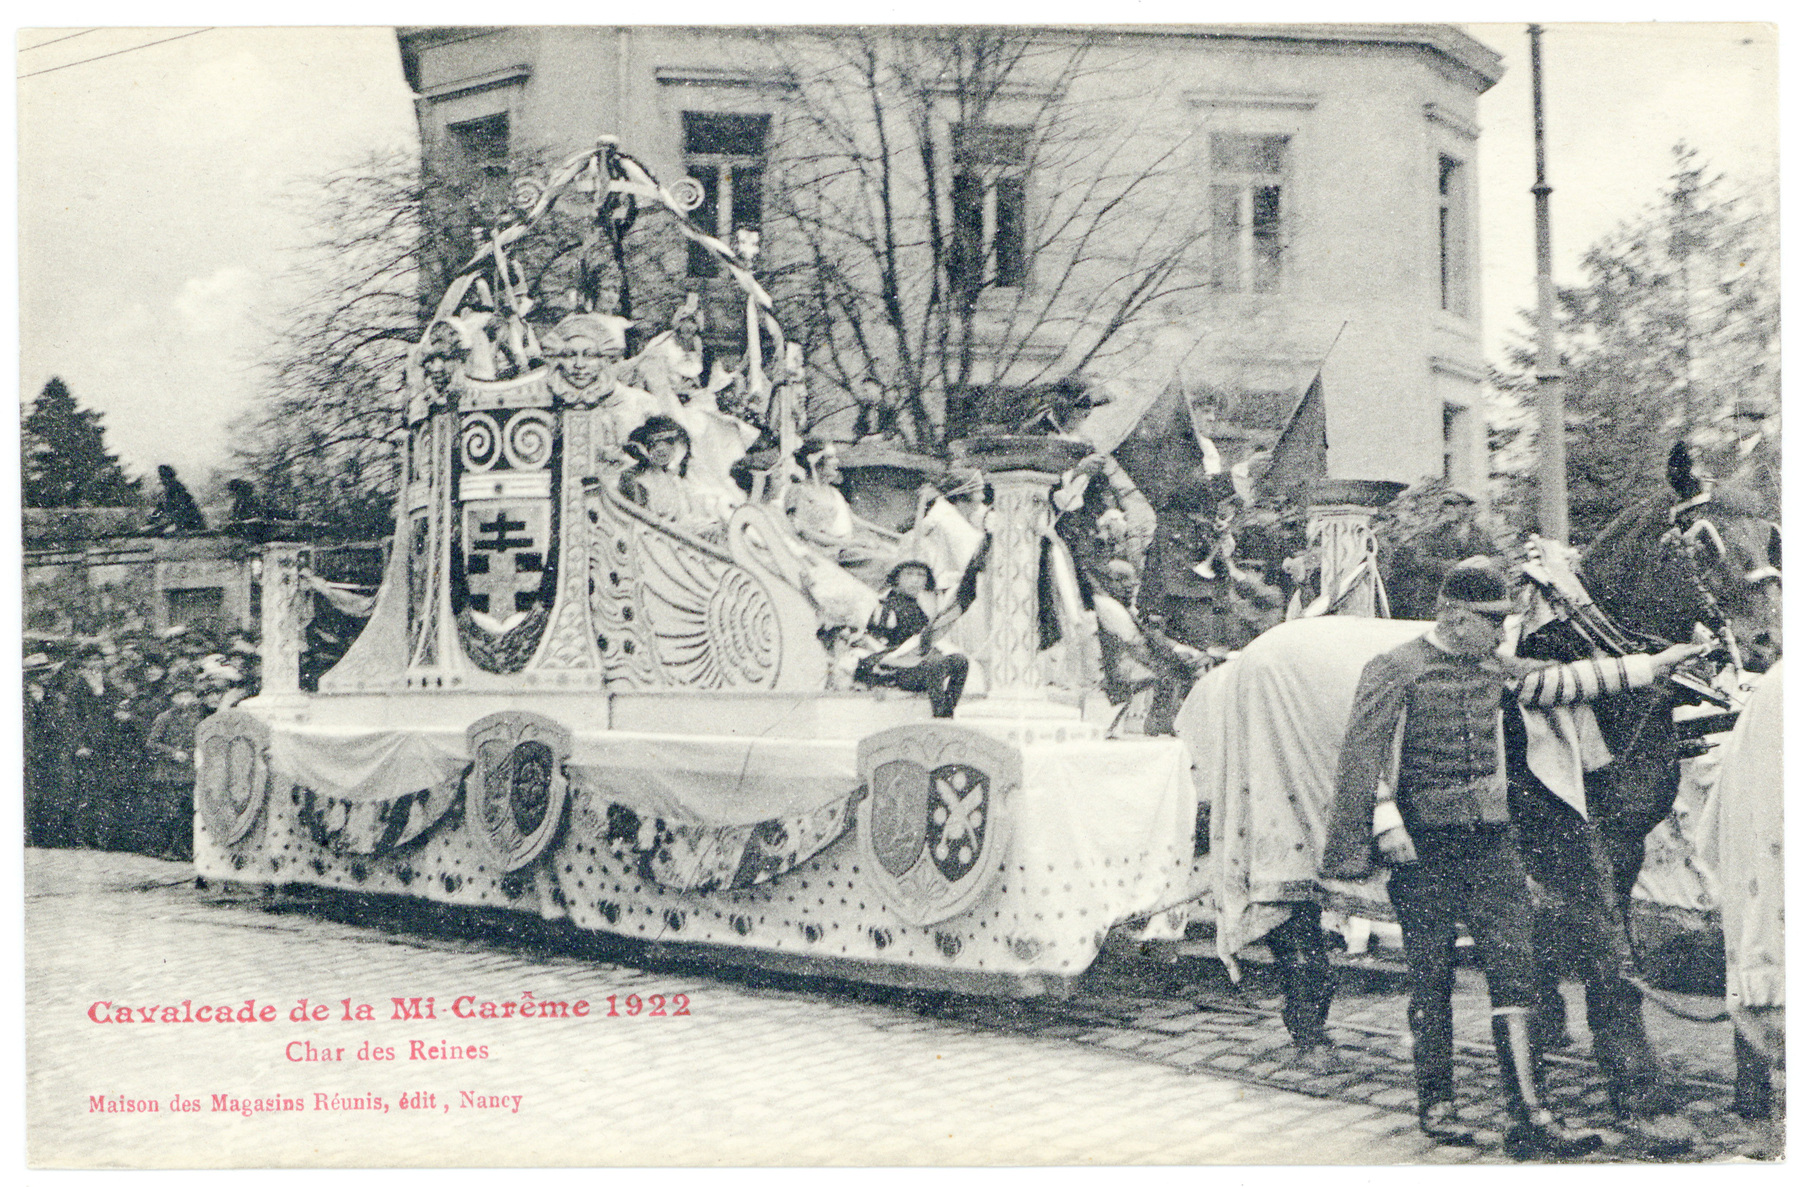 Contenu du Char des Reines : cavalcade de la mi carême 1922